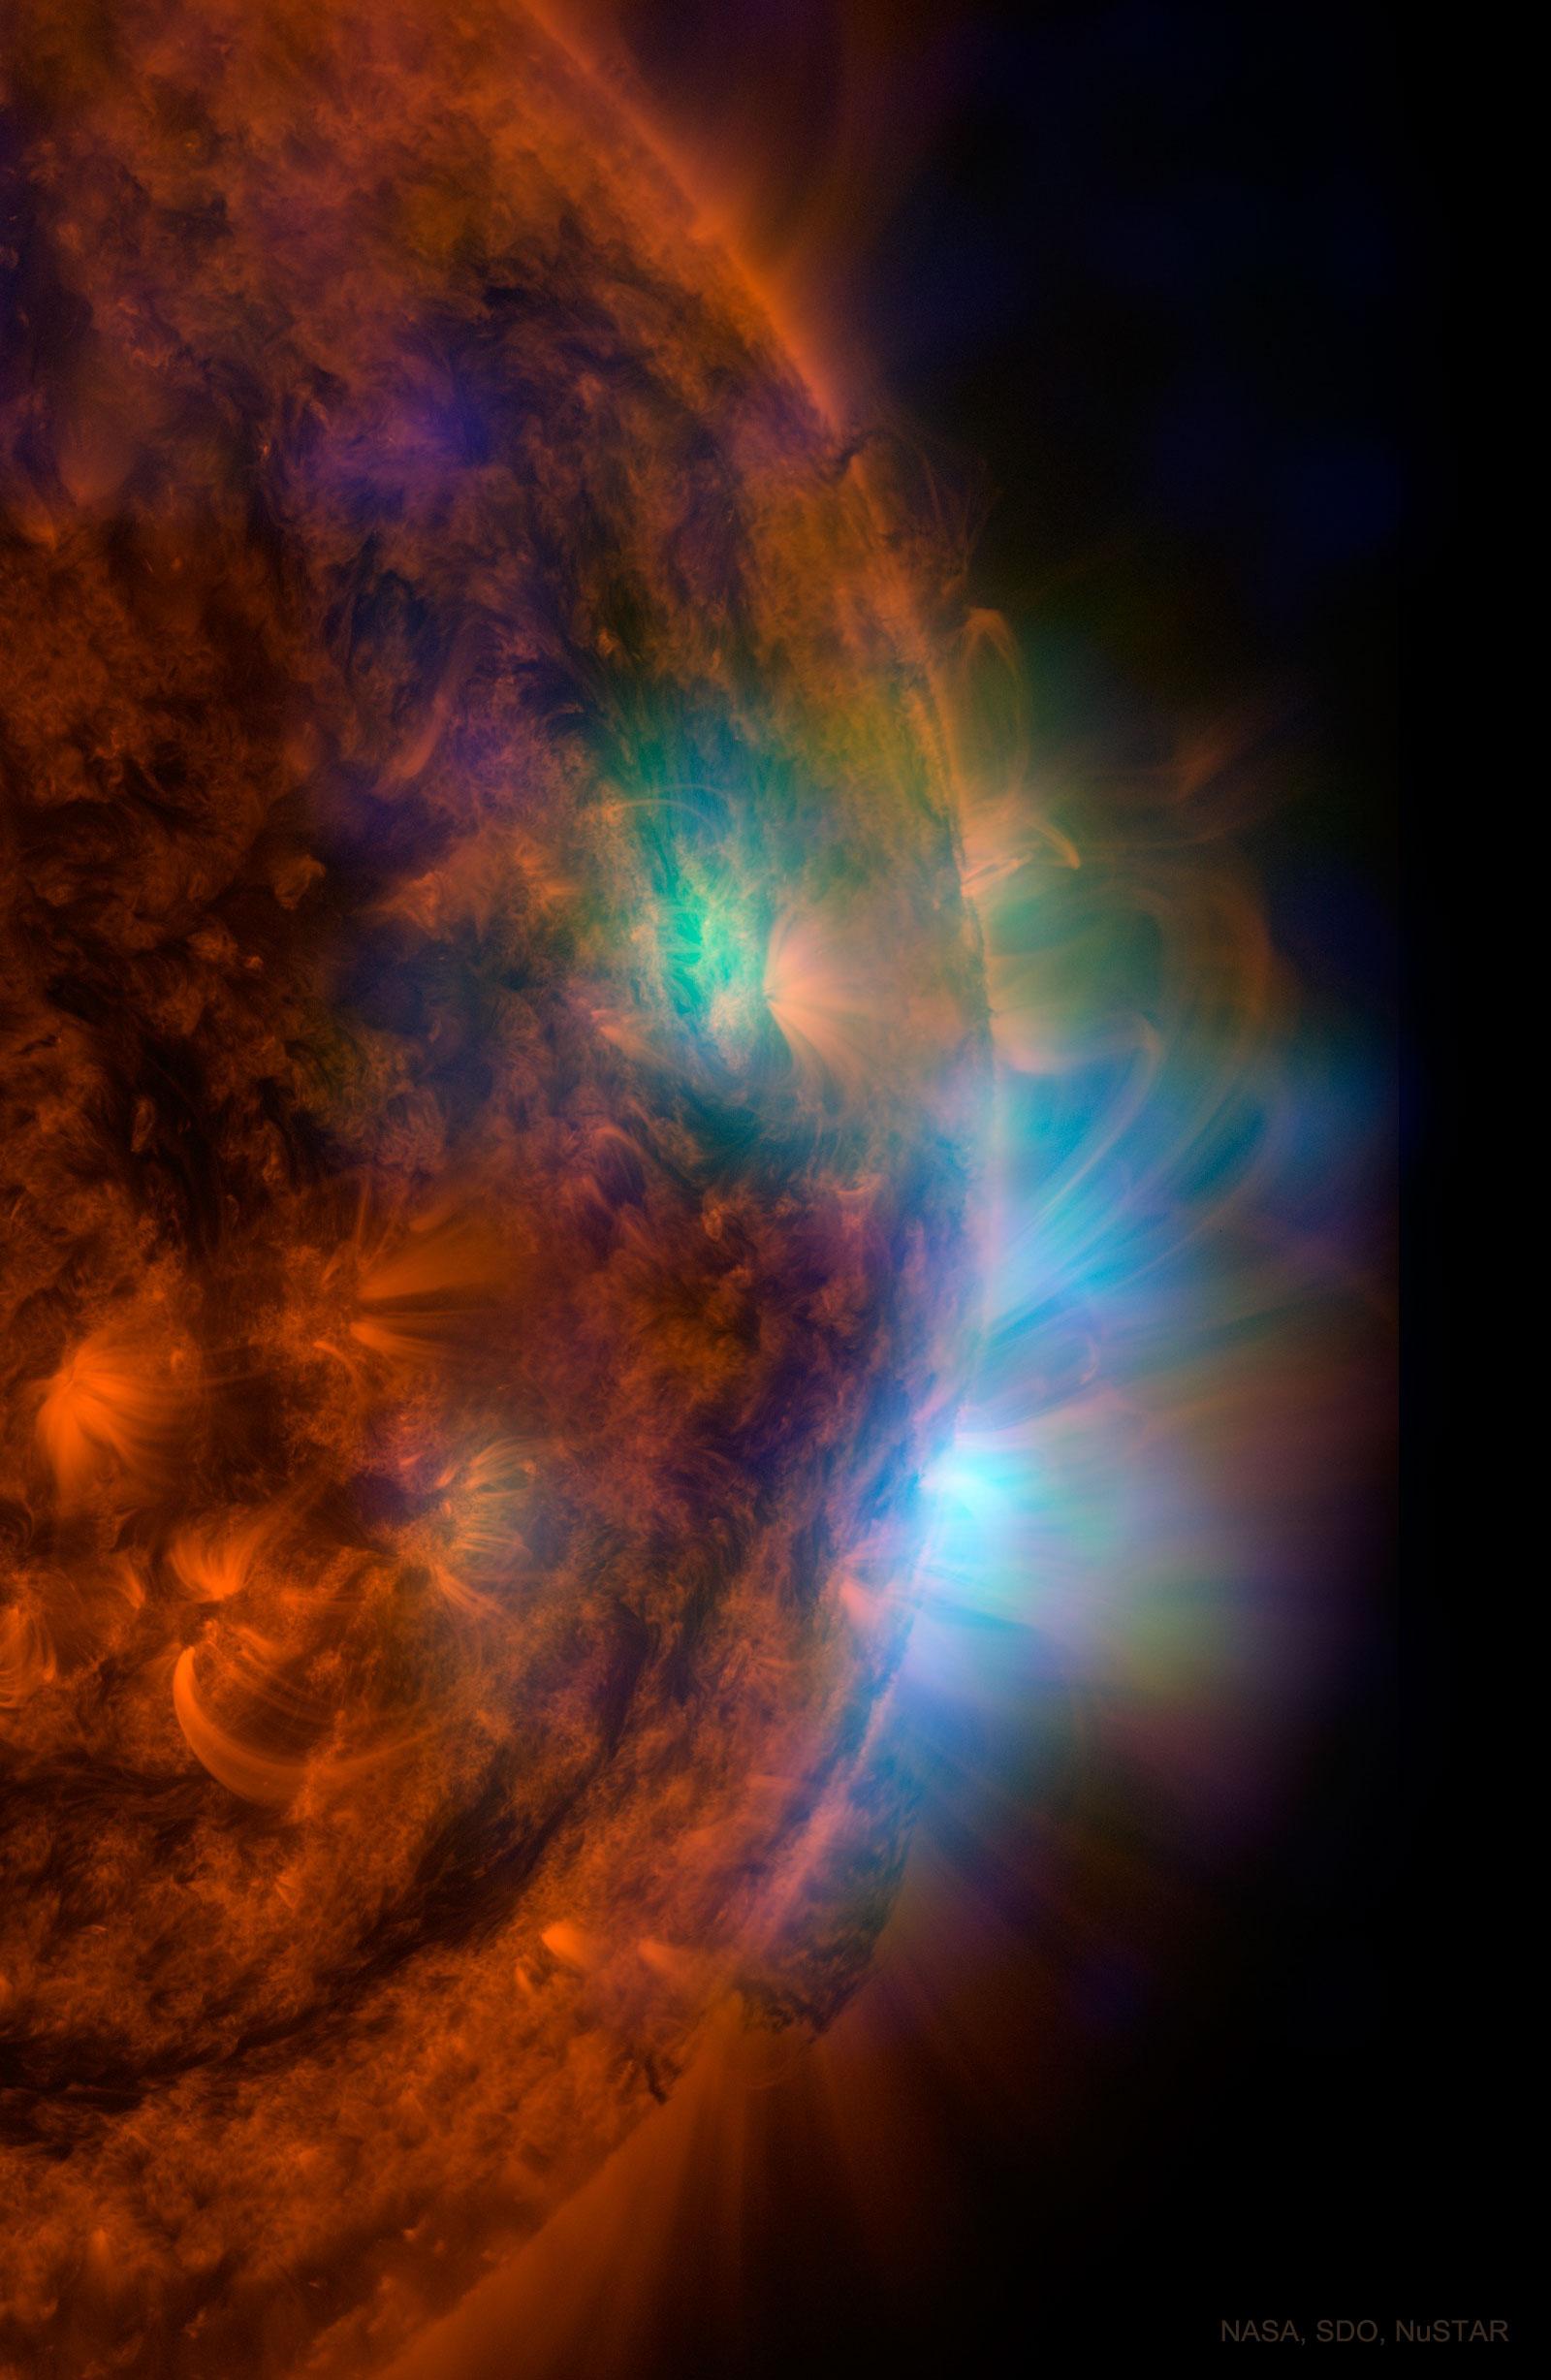 جزء من قرص الشمس بالأشعة فوق البنفسجية مظهراً بعض المناطق بتدرجات اللون الأحمر، ومناطق أخرى ملتقطة بالأشعة السينيّة بألوان غير حقيقية تظهر تدفقات باللونين الأزرق والأخضر.